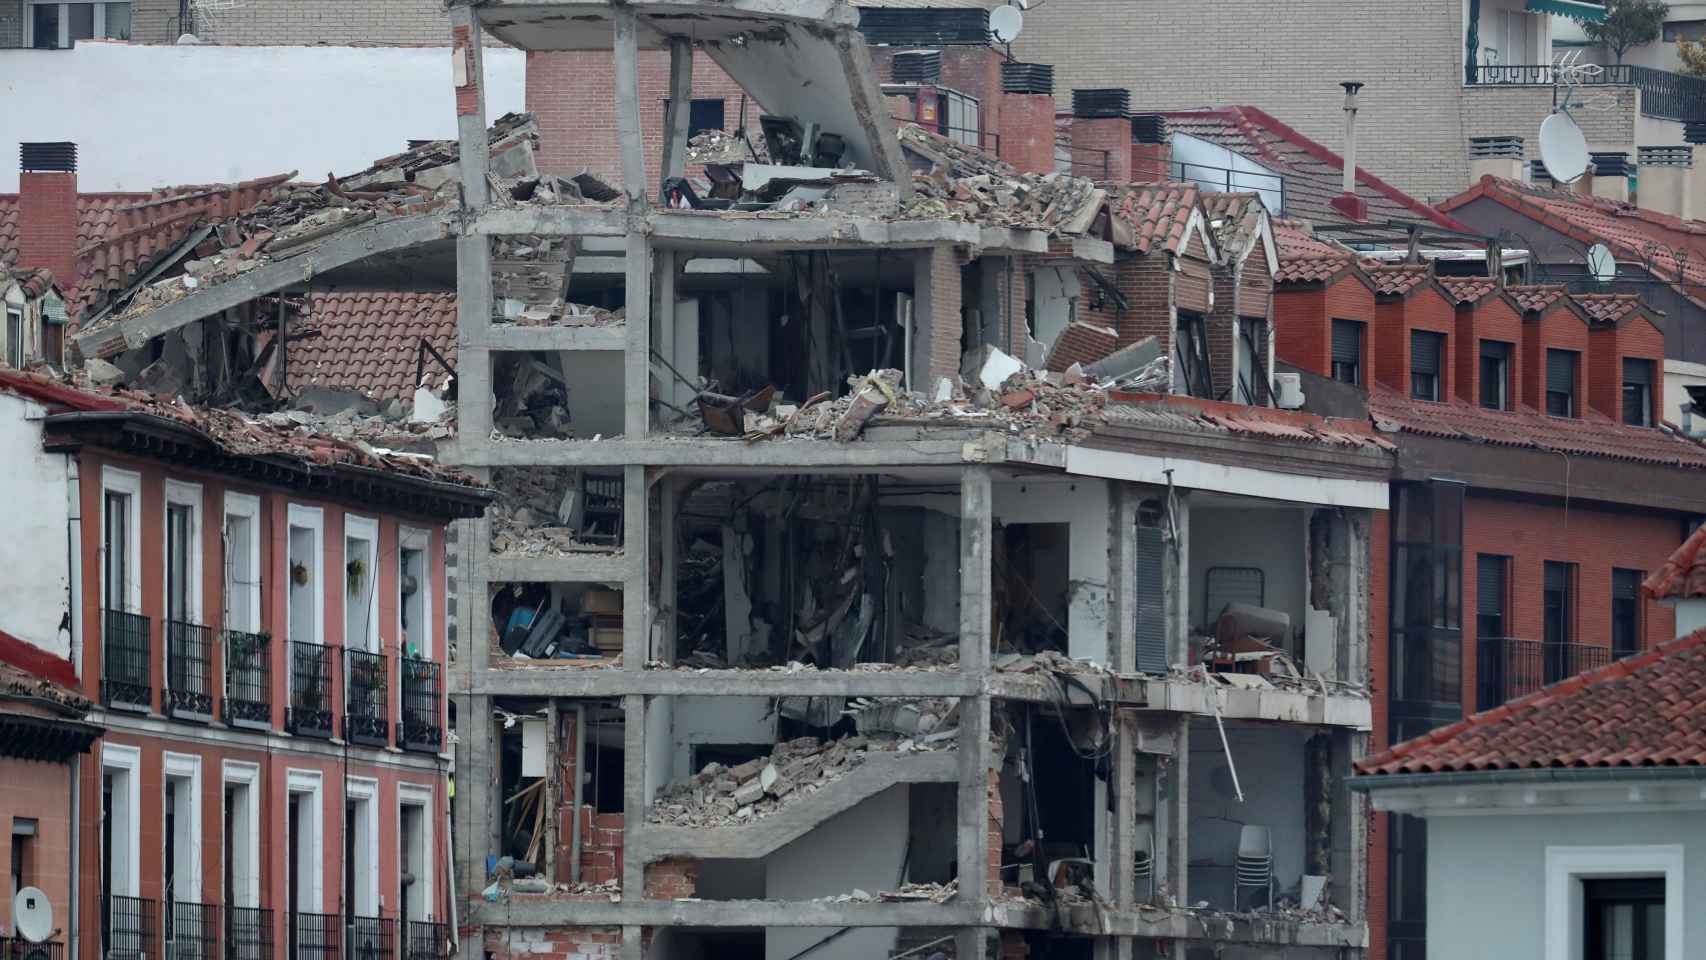 Vista de los daños ocasionados tras la explosión de gas en un edificio en el centro de Madrid.